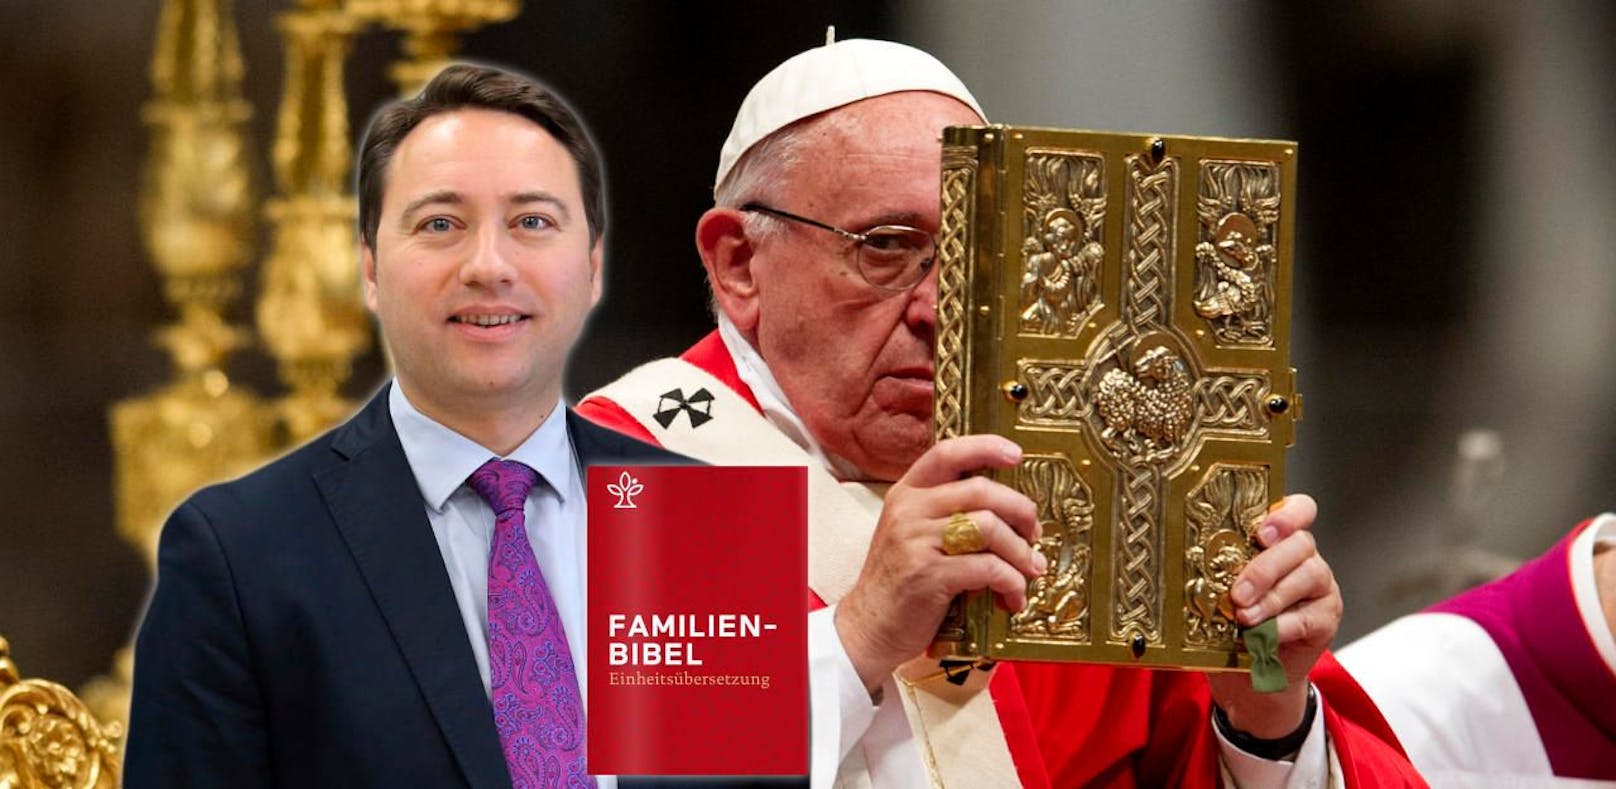 Der oö. FPÖ-Chef Haimbuchner kritisiert die vom Papst genehmigte Familienbibel der Diözese Linz.